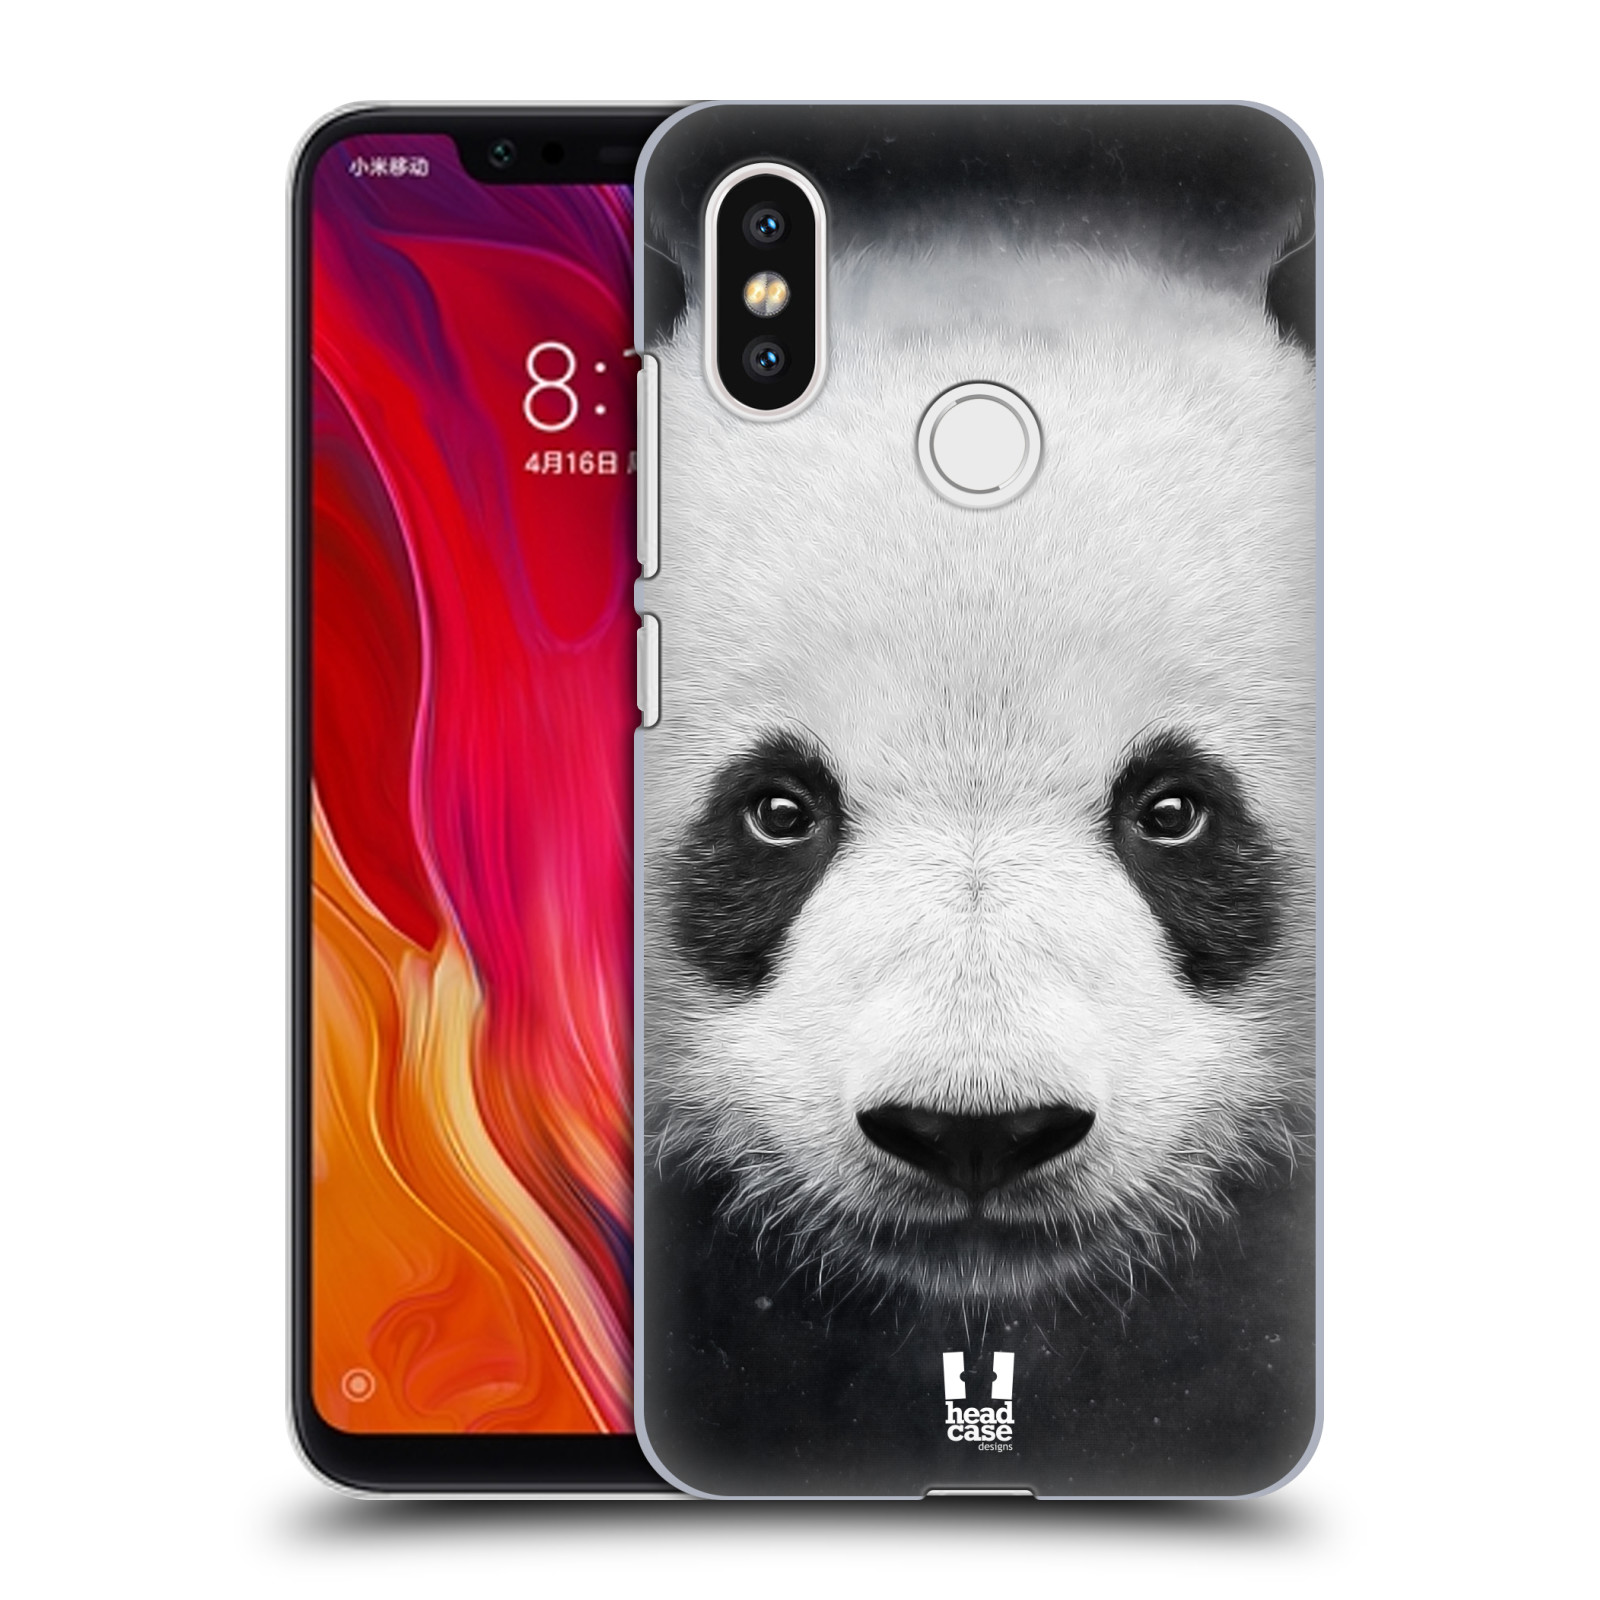 HEAD CASE plastový obal na mobil Xiaomi Mi 8 vzor Zvířecí tváře medvěd panda